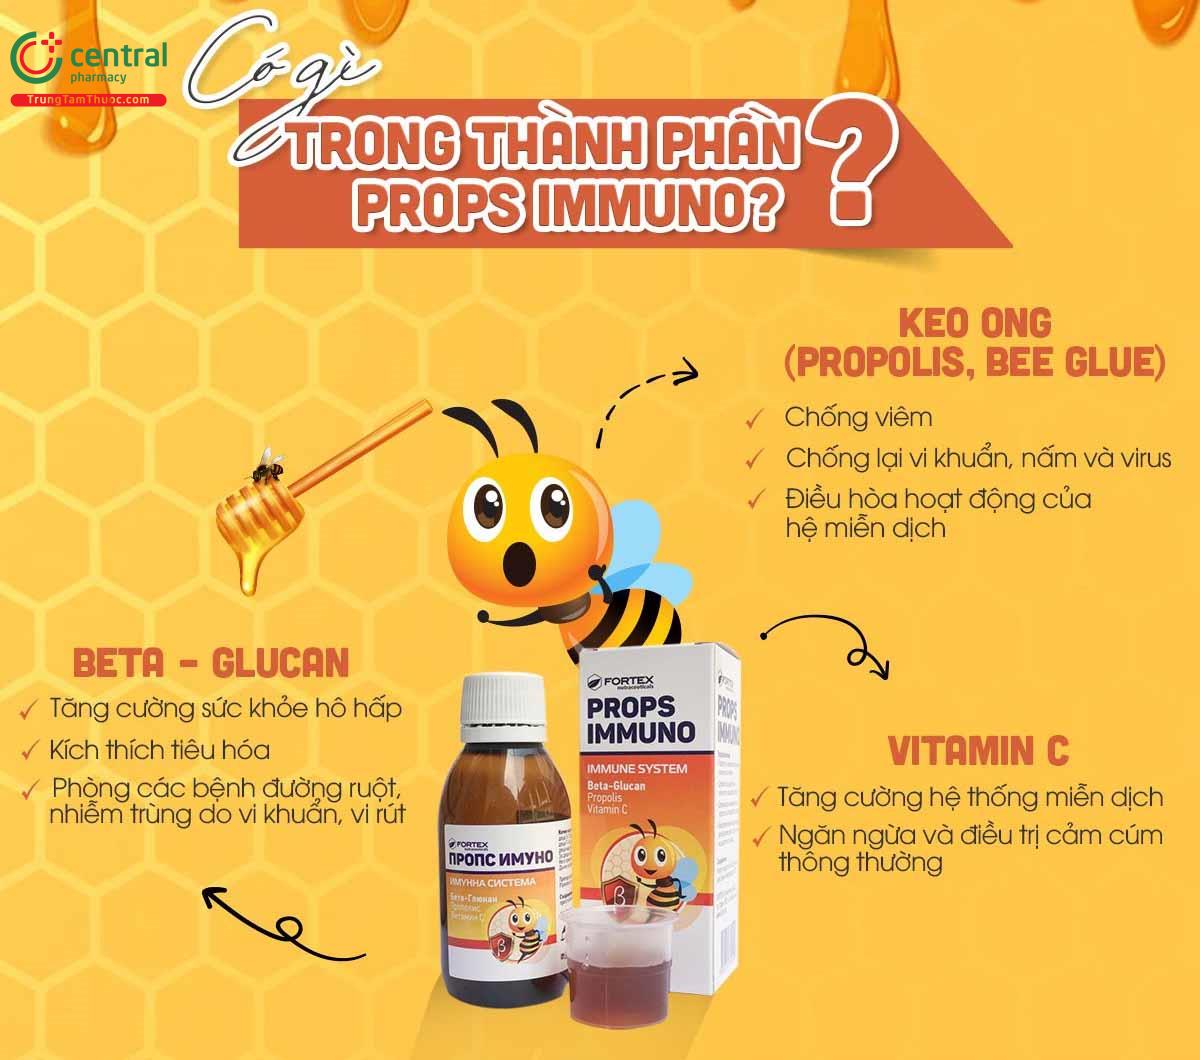 PropsImmuno giúp hỗ trợ tăng cường miễn dịch